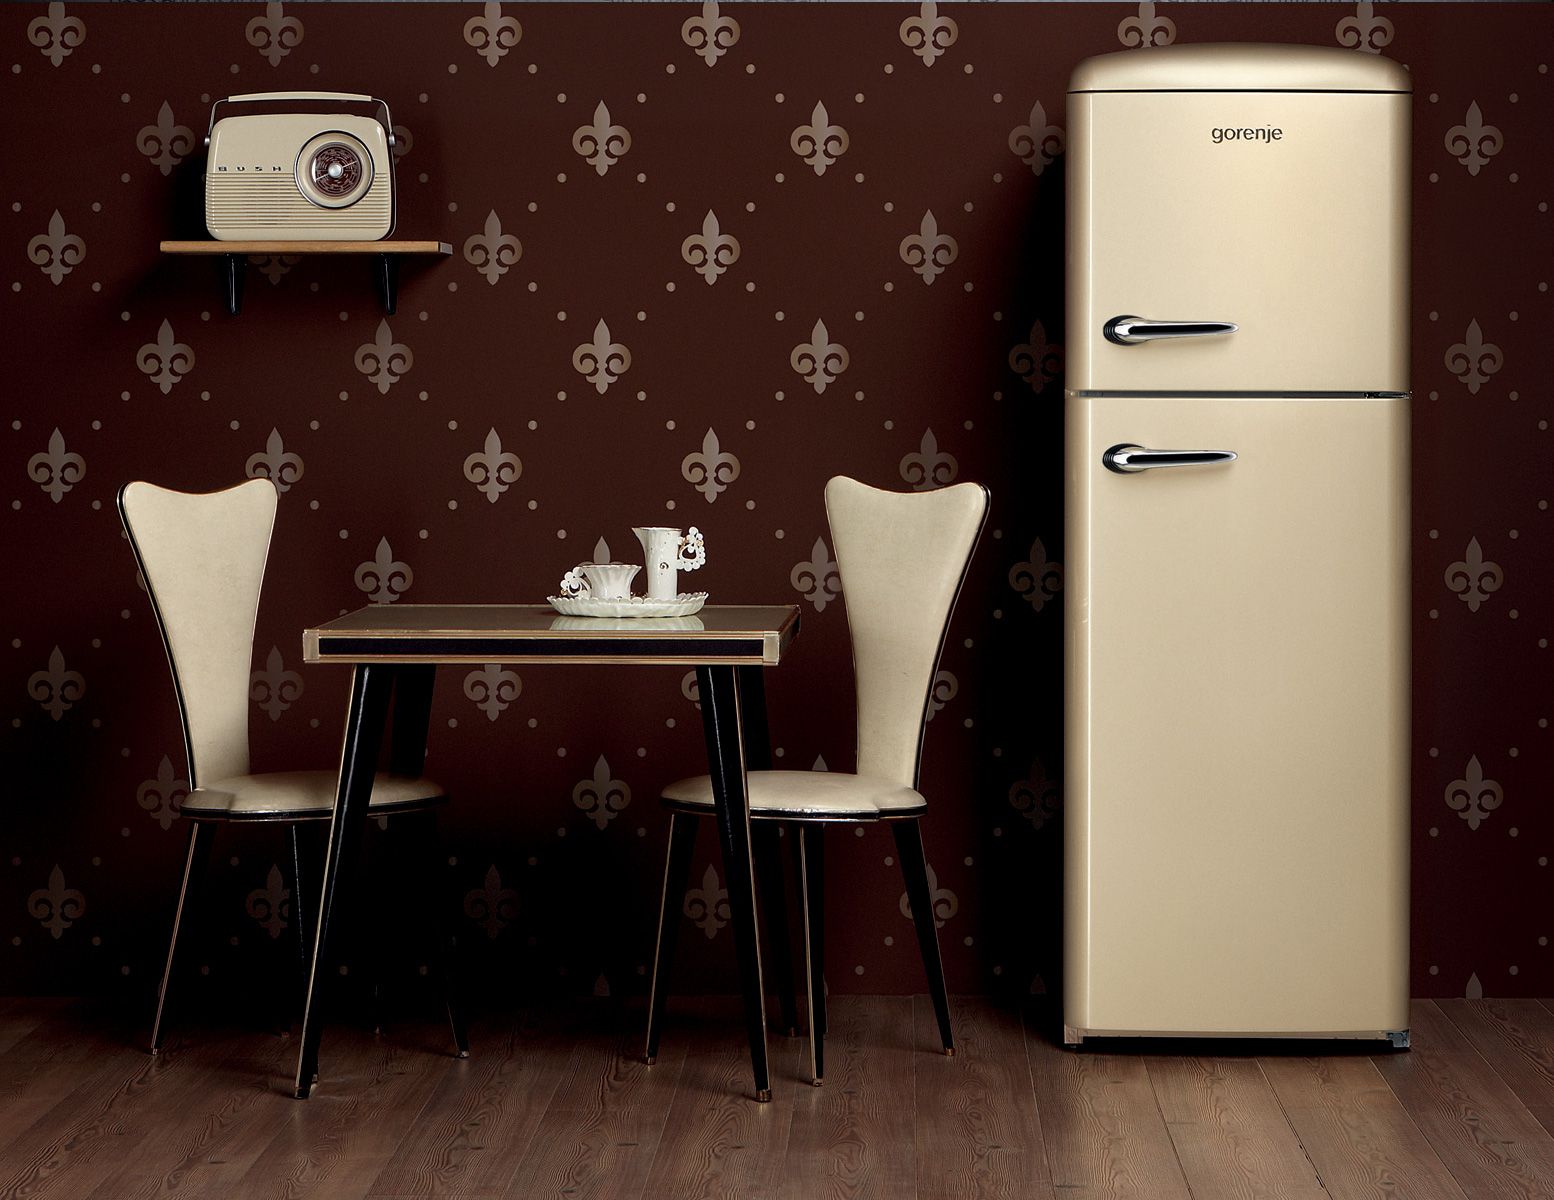 Холодильник Gorenje RF 60309